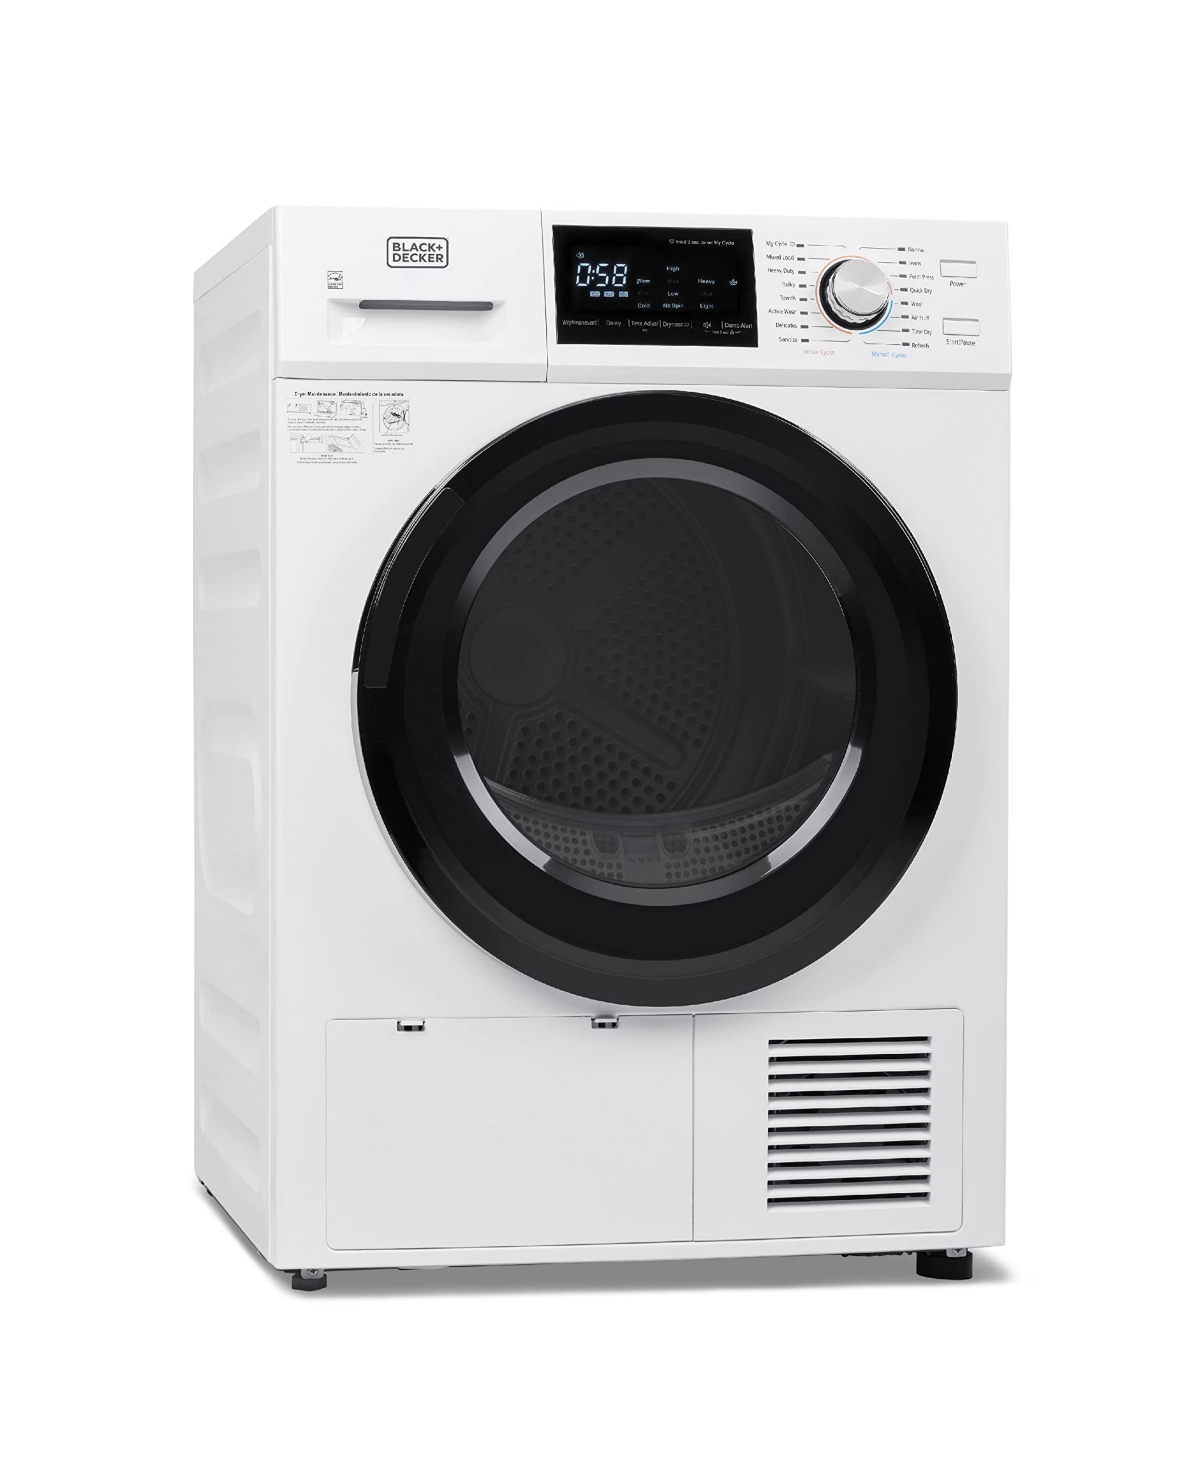 Black+decker 4.4 Cu.ft. Dryer With Heat Pump In White